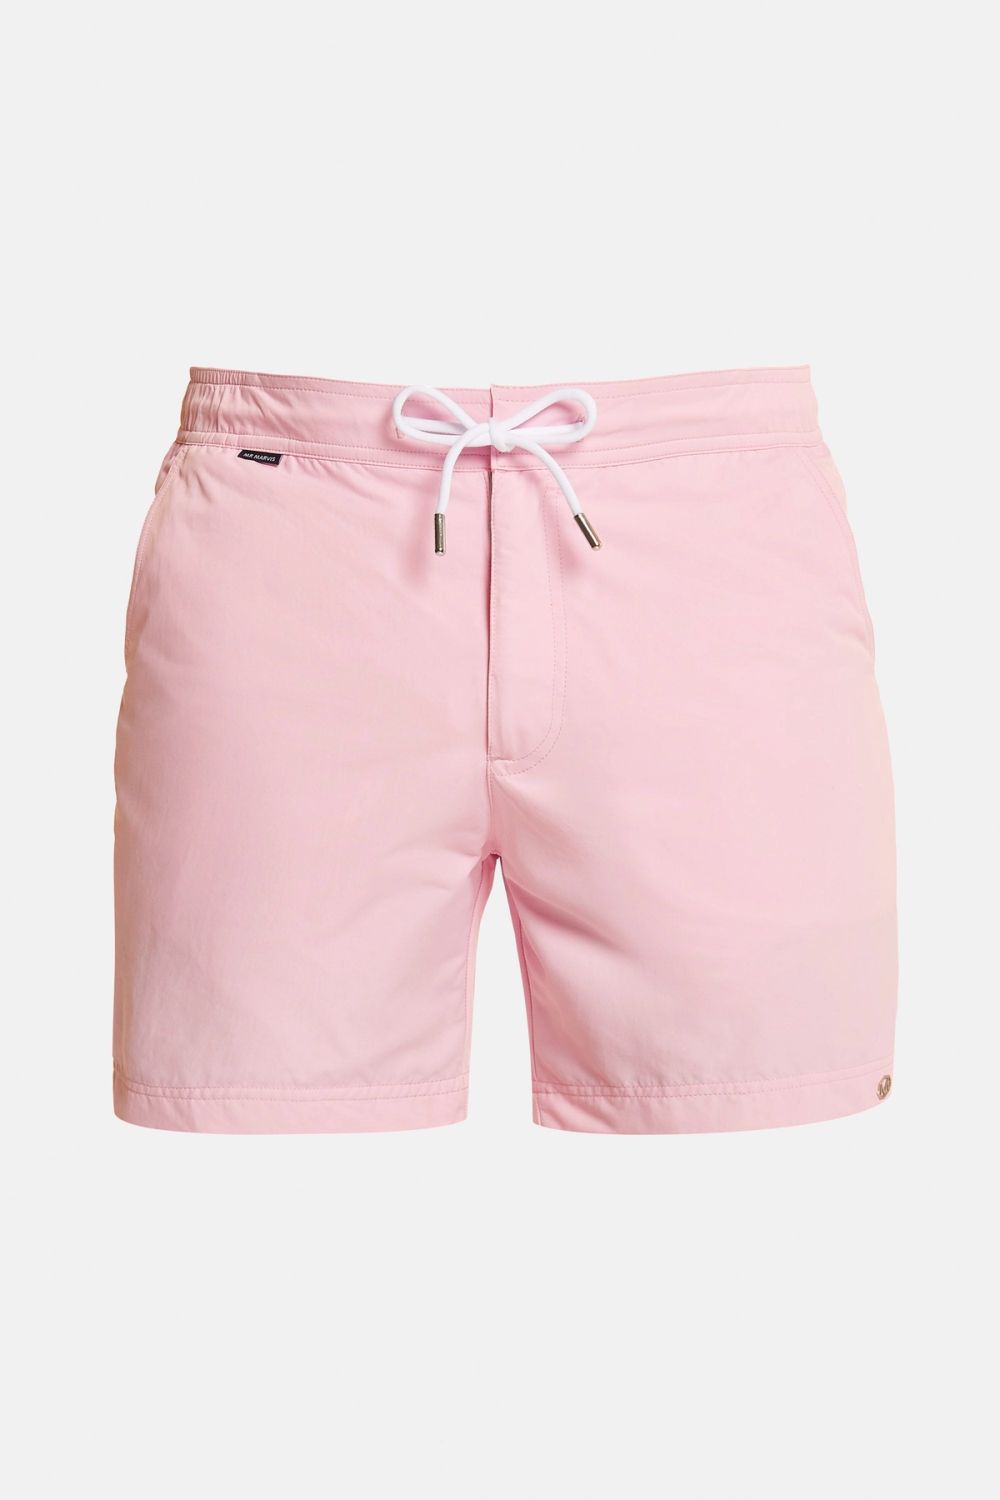 Flamingos - Shorts de Bain